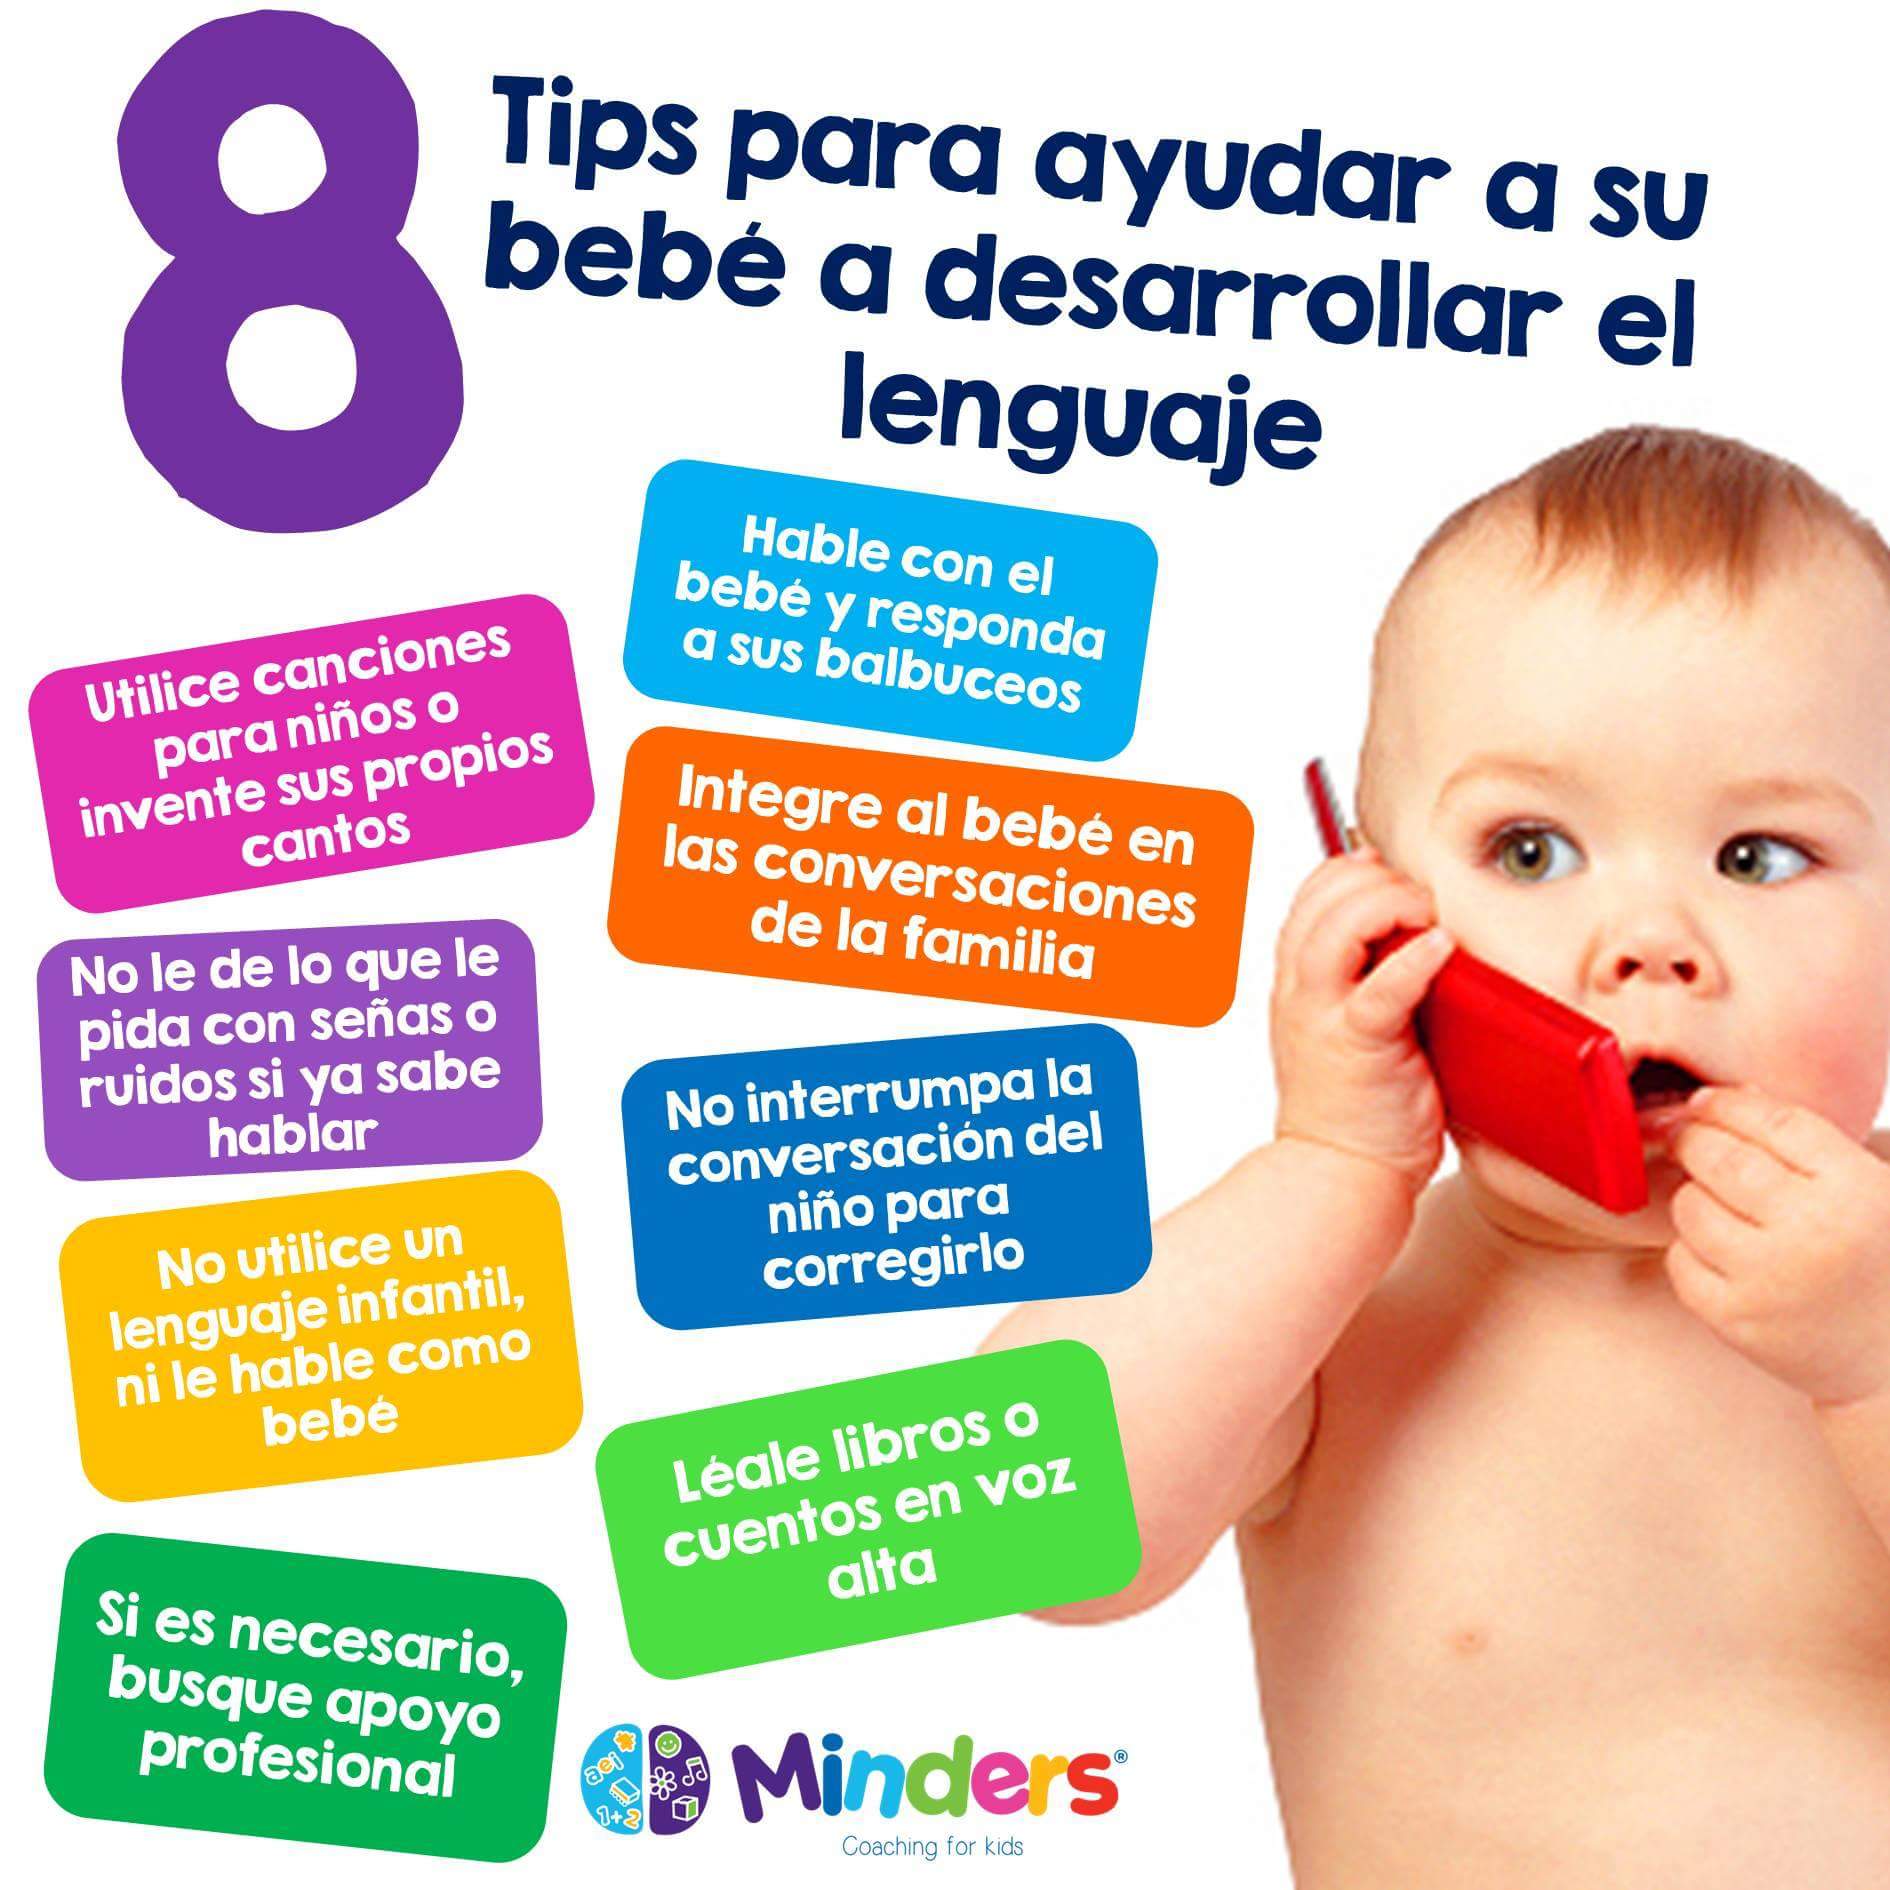 oro Turista No autorizado Psicología infantil on Twitter: "Tips para ayudar al bebé a desarrollar el  lenguaje #psicologia #psicologiainfantil https://t.co/uPpEbskPzF" / Twitter